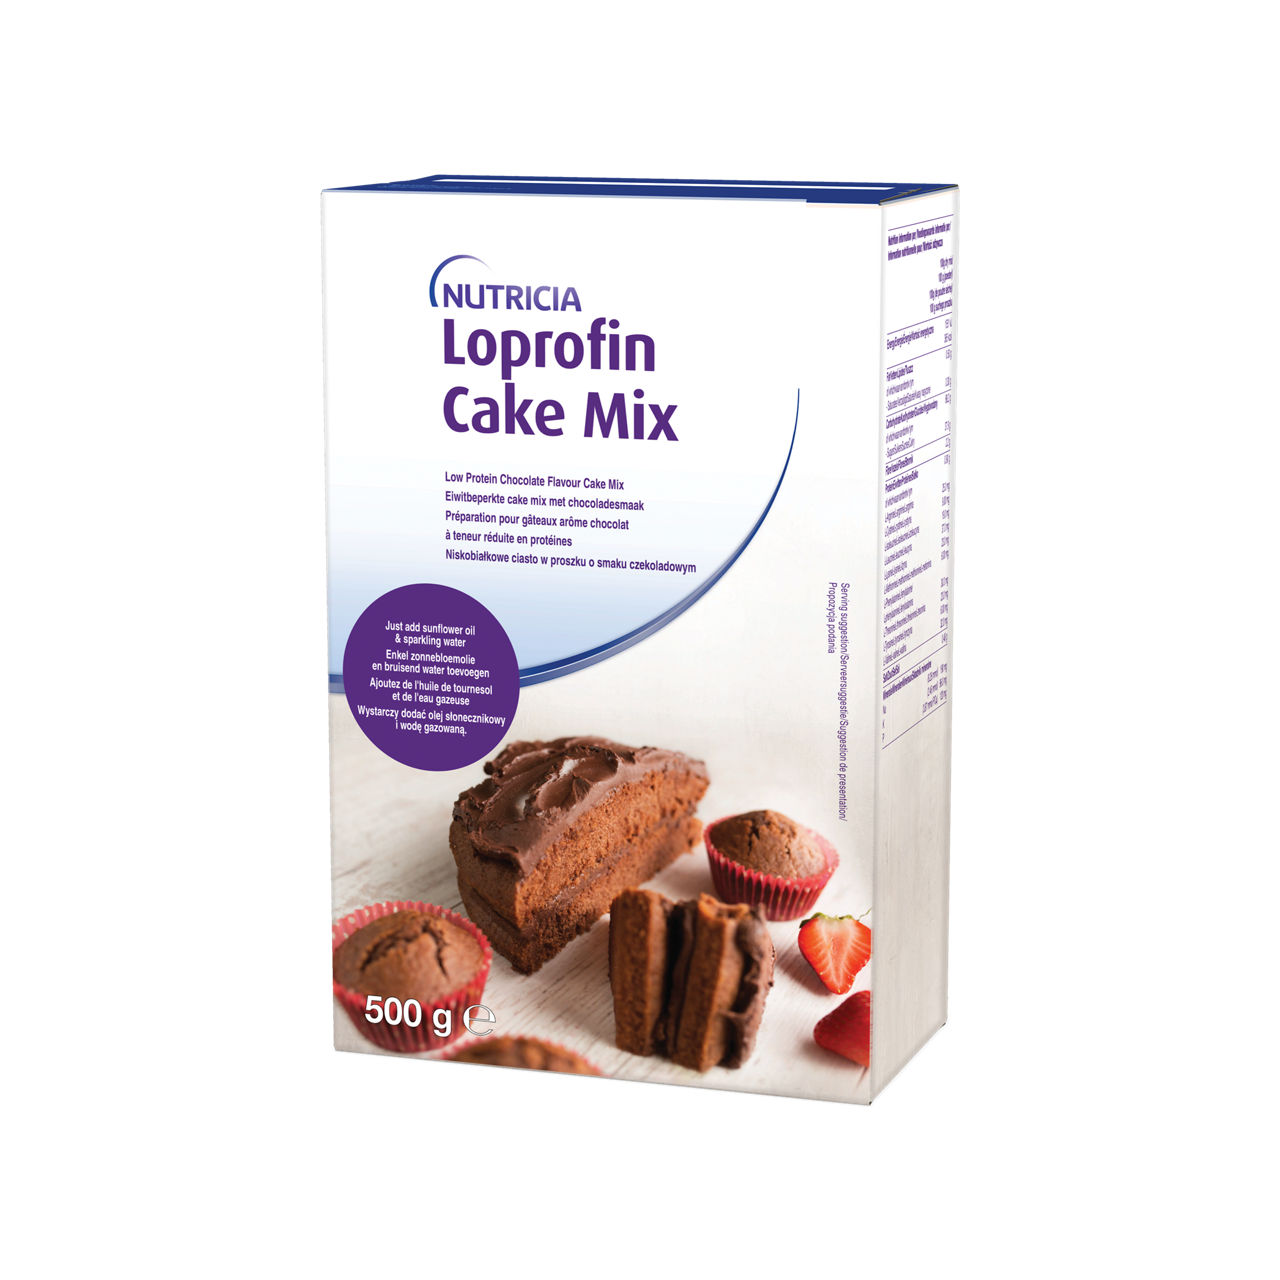 Loprofin Cake mix packshots